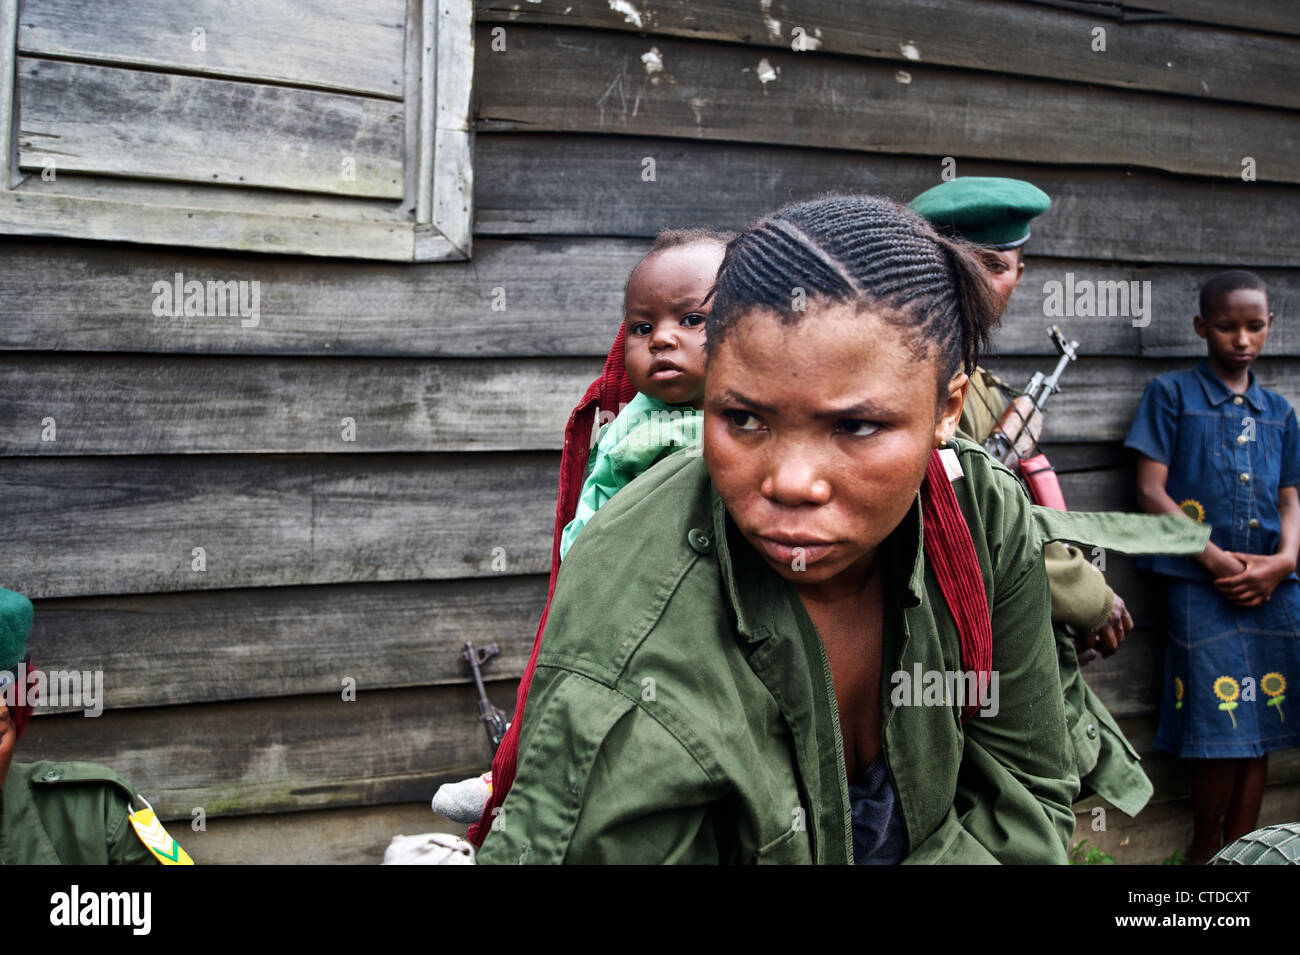 Mujeres soldado congoleño, las FARDC, Mushake, República Democrática del Congo Foto de stock